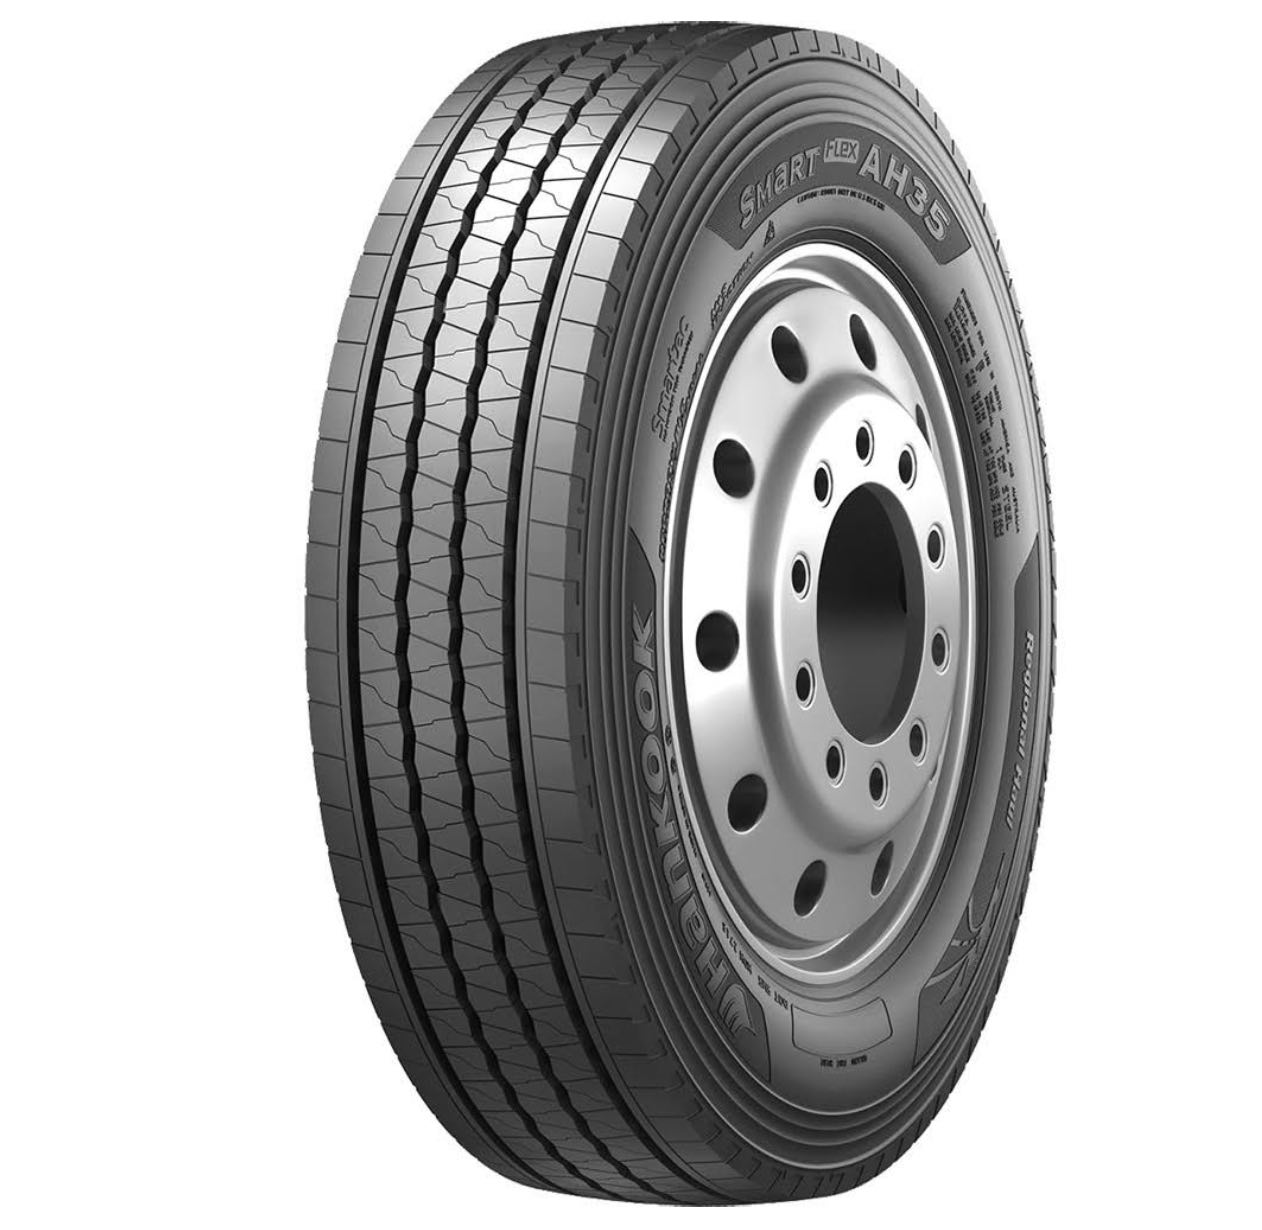 Hankook 265/70R19.5 General Purpose Tyre